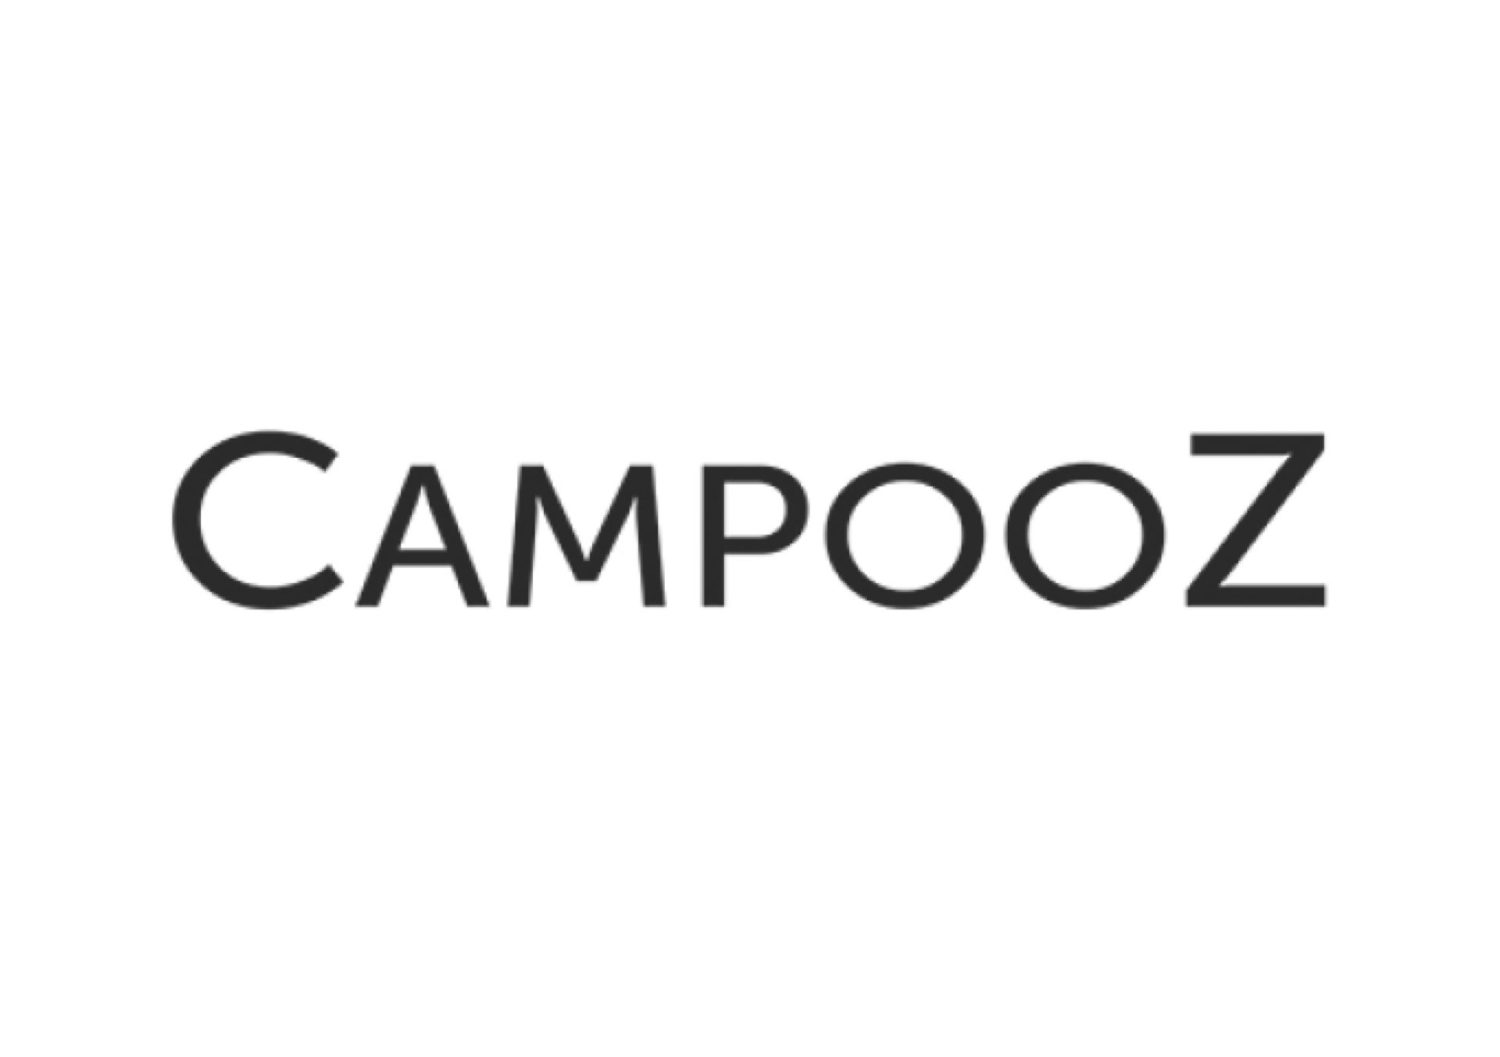 Campooz